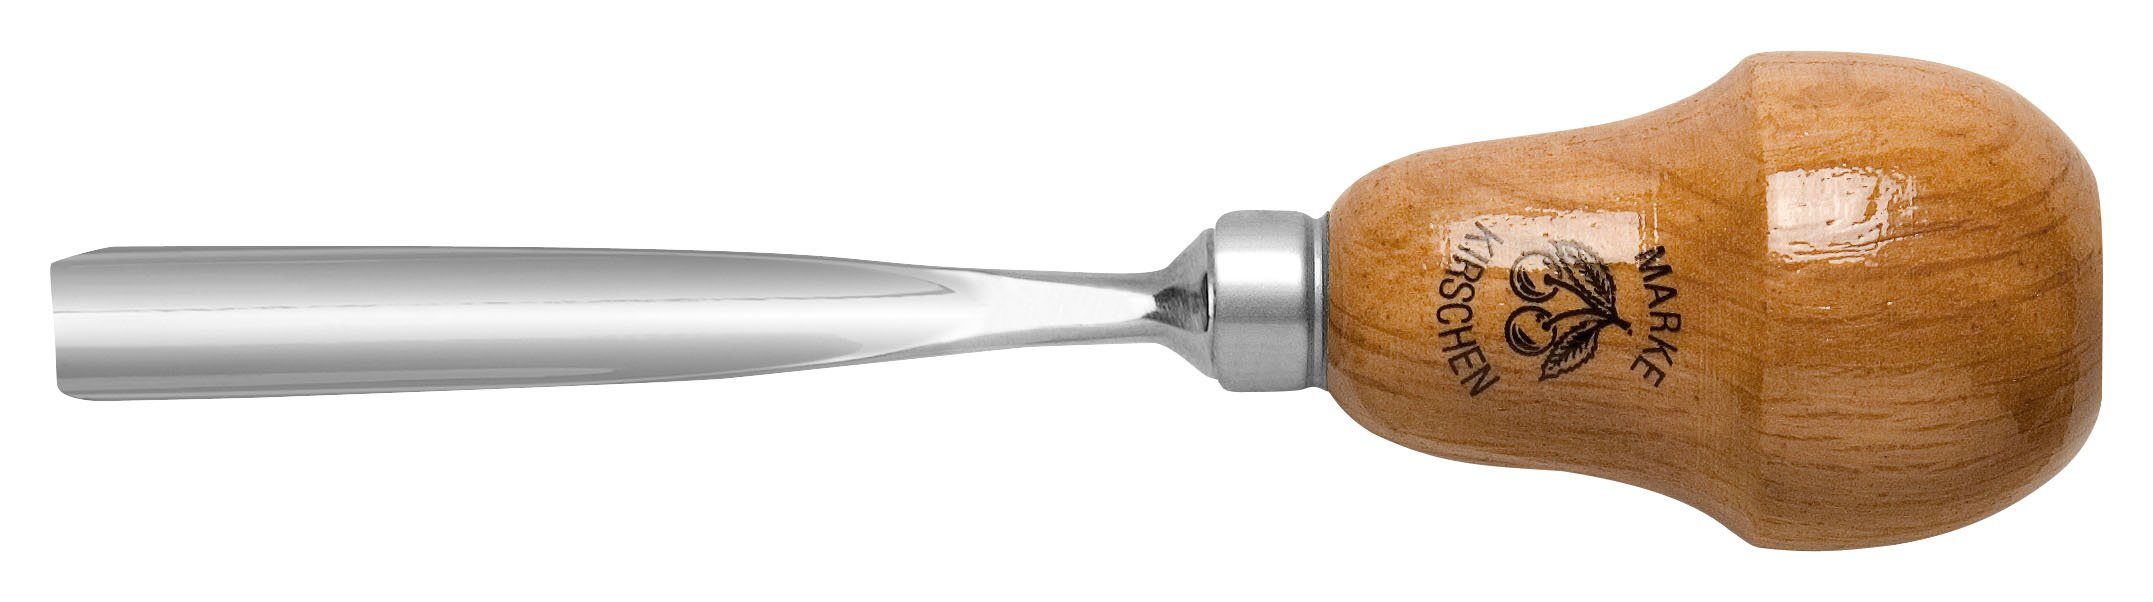 Kerbschnitzbeitel mit gerade Stich Kirschen & Stechbeitel KIRSCHEN Birnenheft Höhlung mittlerer 8, - 4mm